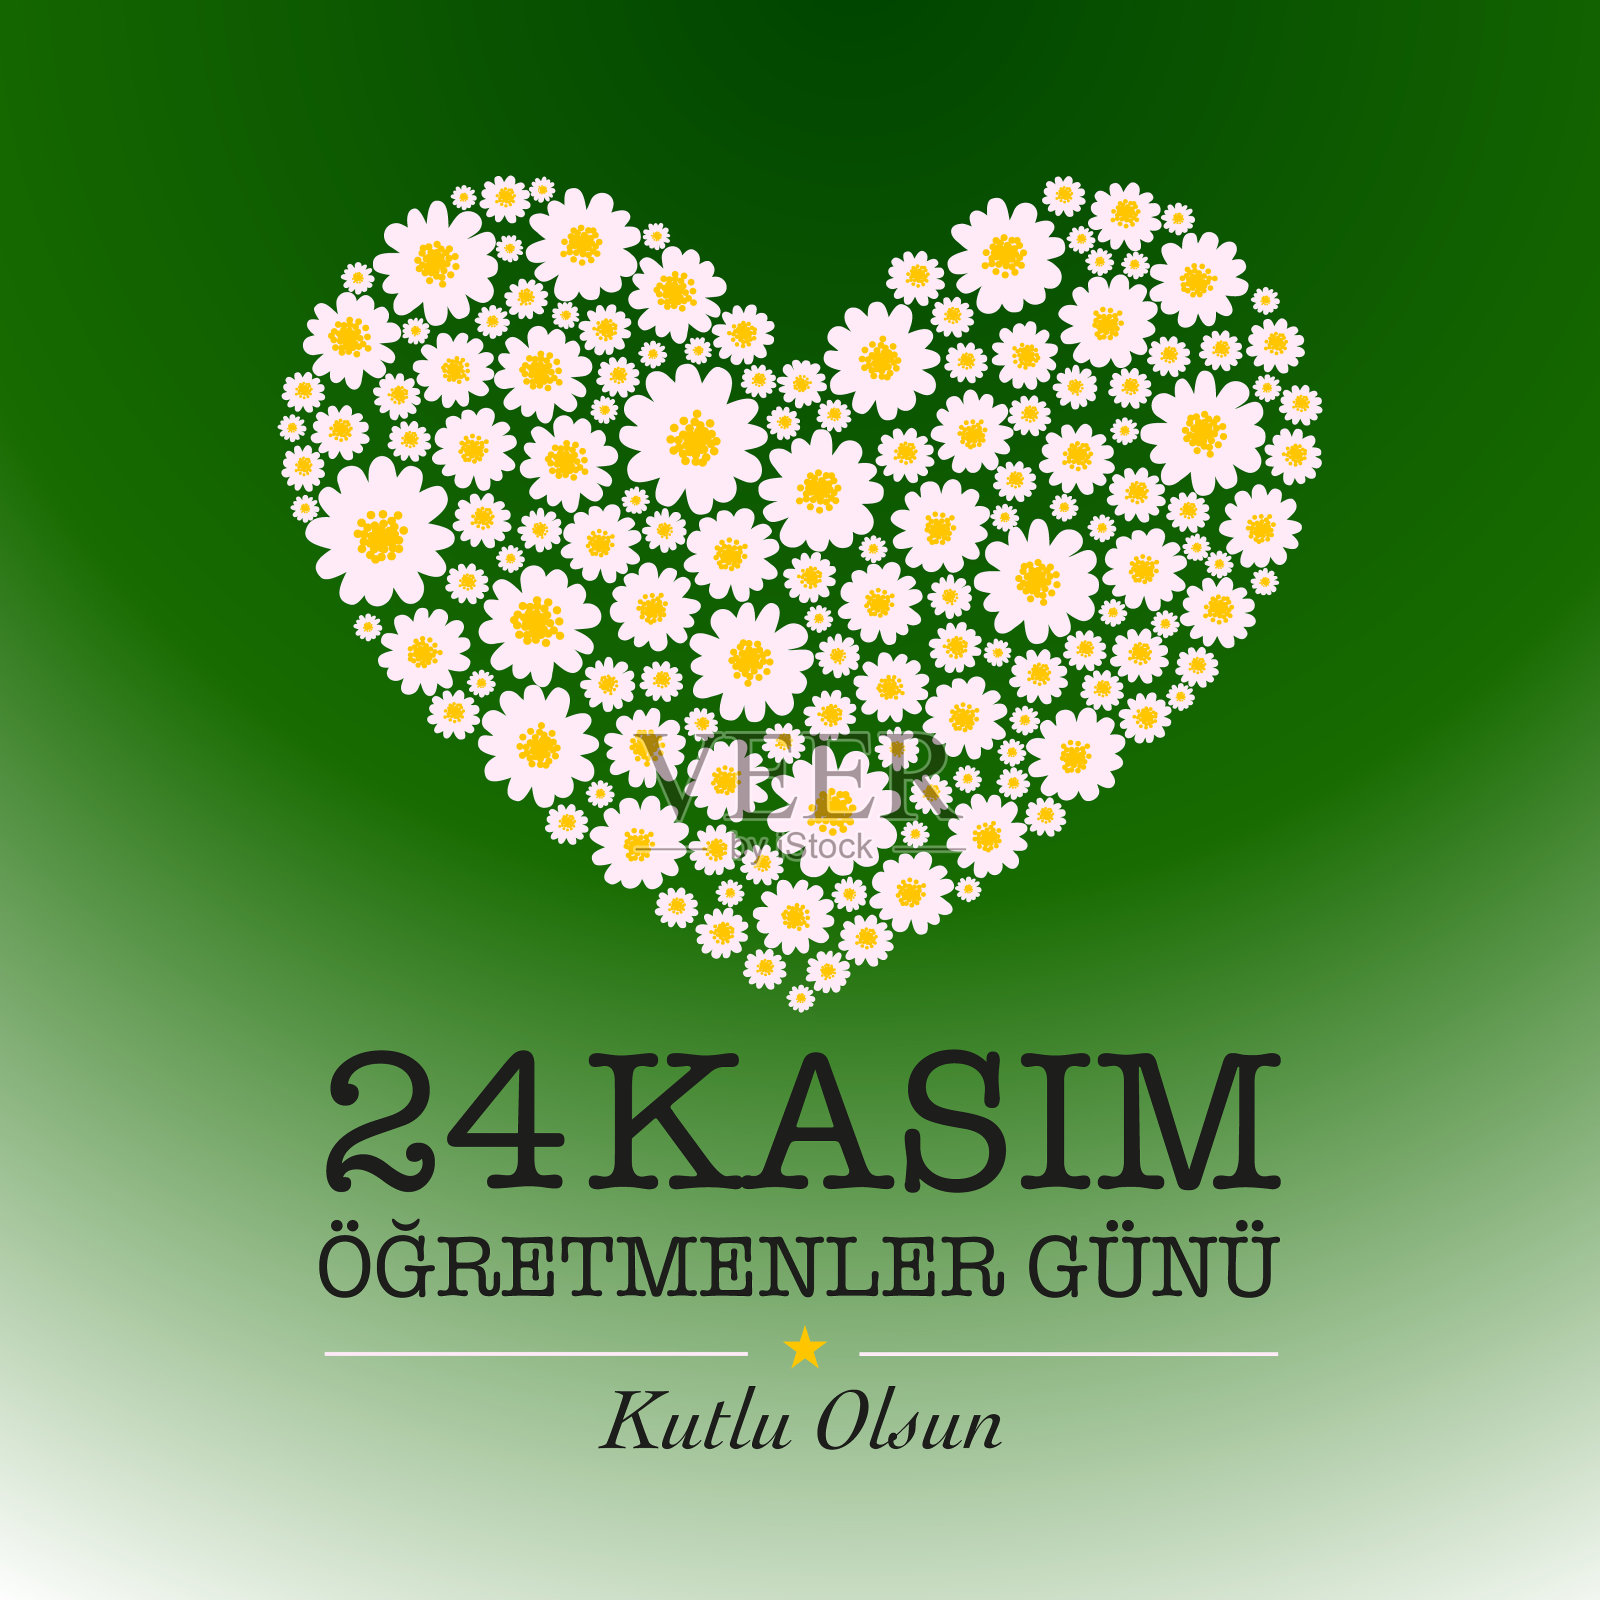 11月24日教师节卡片设计。" 24 Kasim ogretmenler gunu "插画图片素材